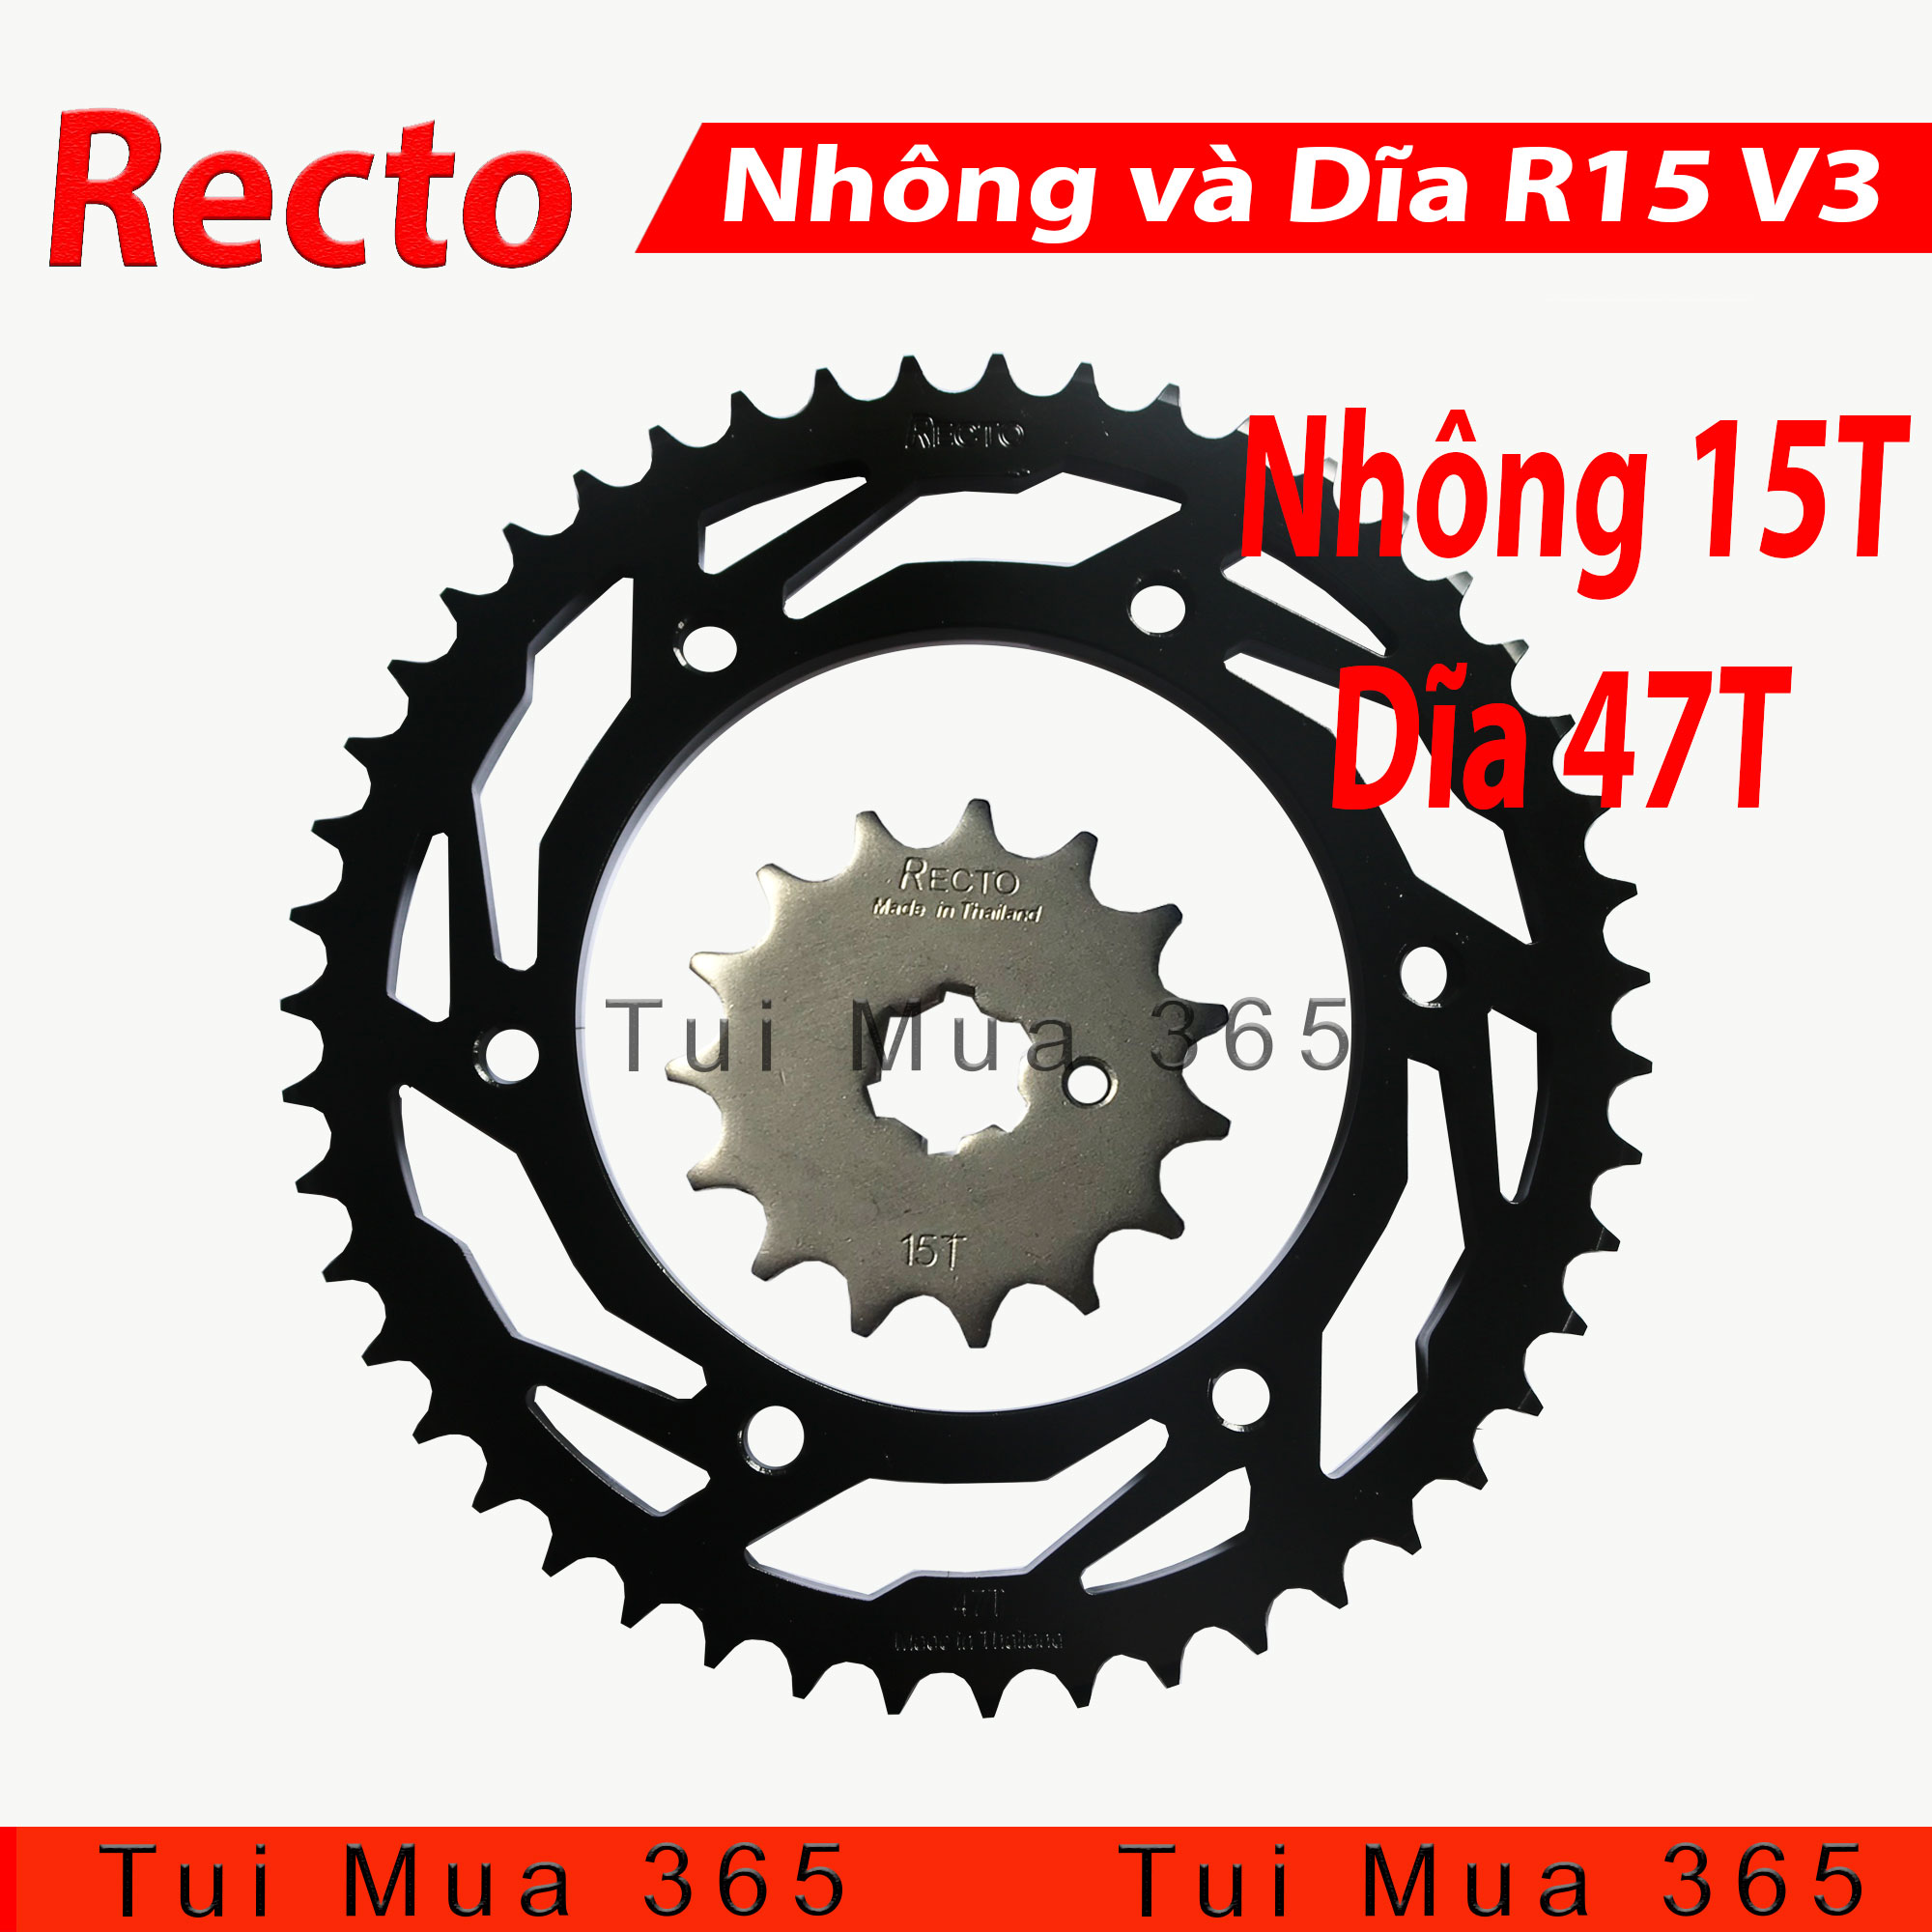 Ex135 Combo sên Faito dĩa nhôm 7075 Black Special nhông Recto  Shopee Việt  Nam